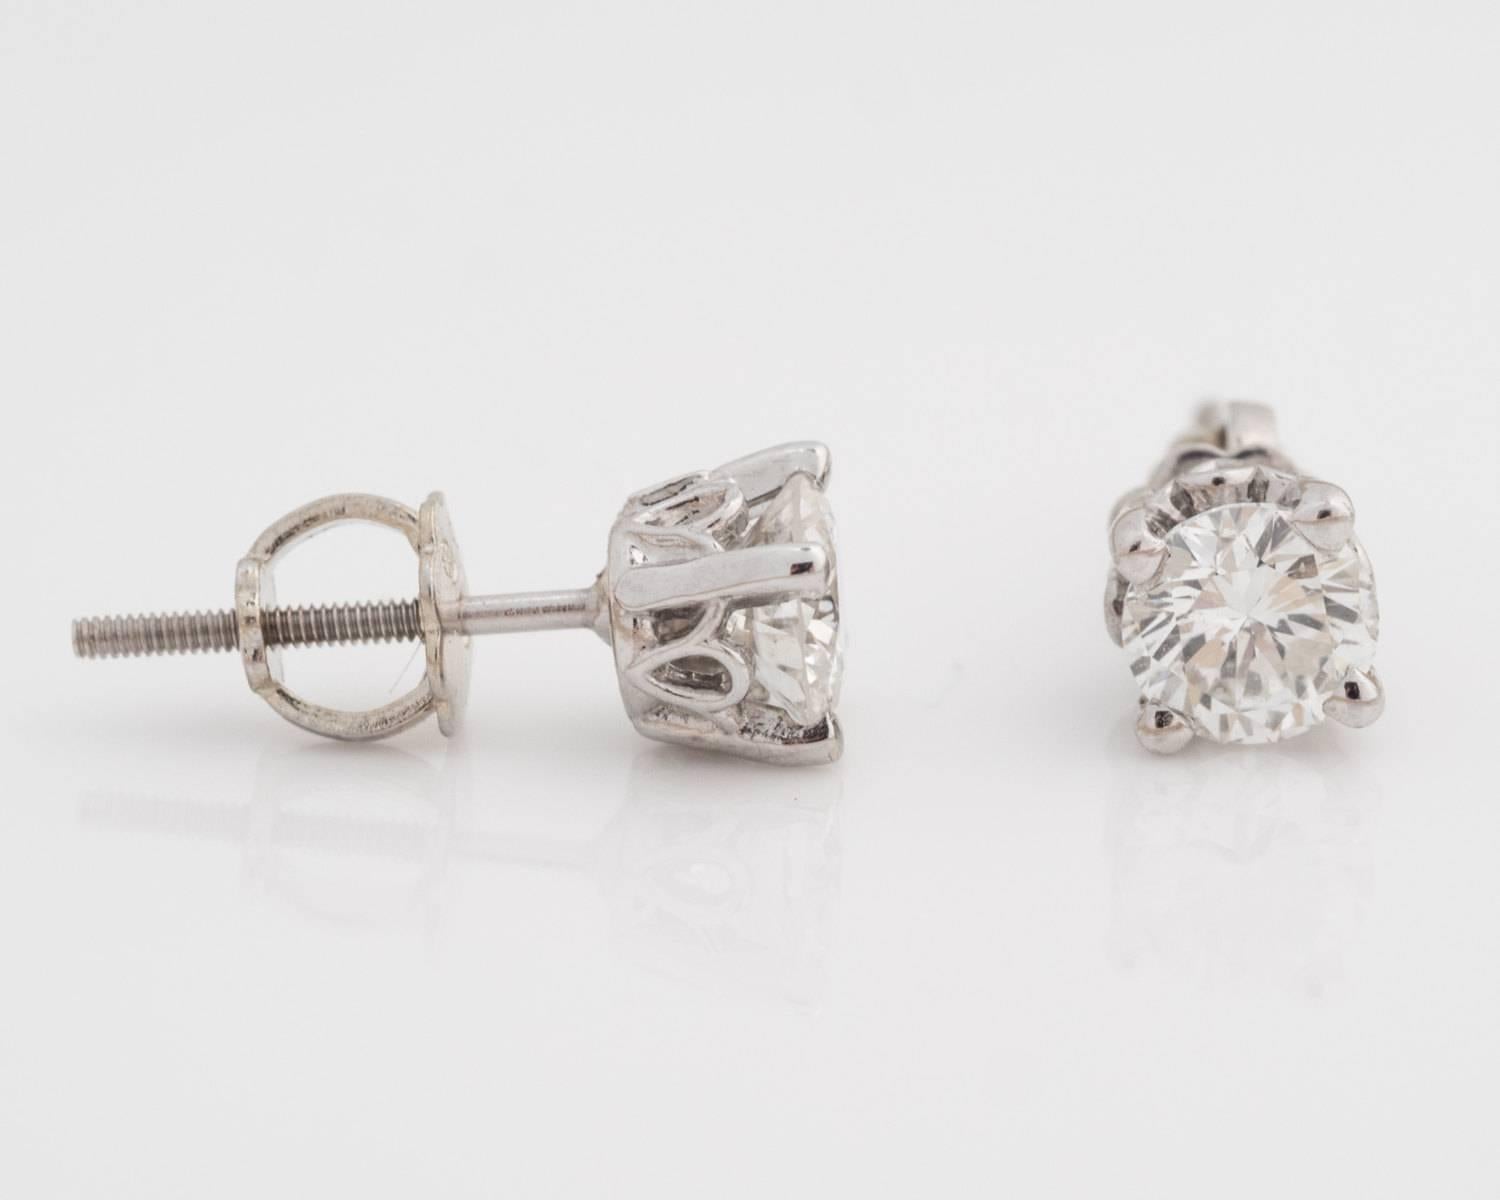 Lorsque nous fabriquons des bijoux personnalisés, nous aimons mettre le paquet ! Et avec ces boucles d'oreilles totalisant 0,80 carat de diamants, vous ne serez pas déçu ! Ces boucles d'oreilles sont parfaites pour toute occasion. Les diamants